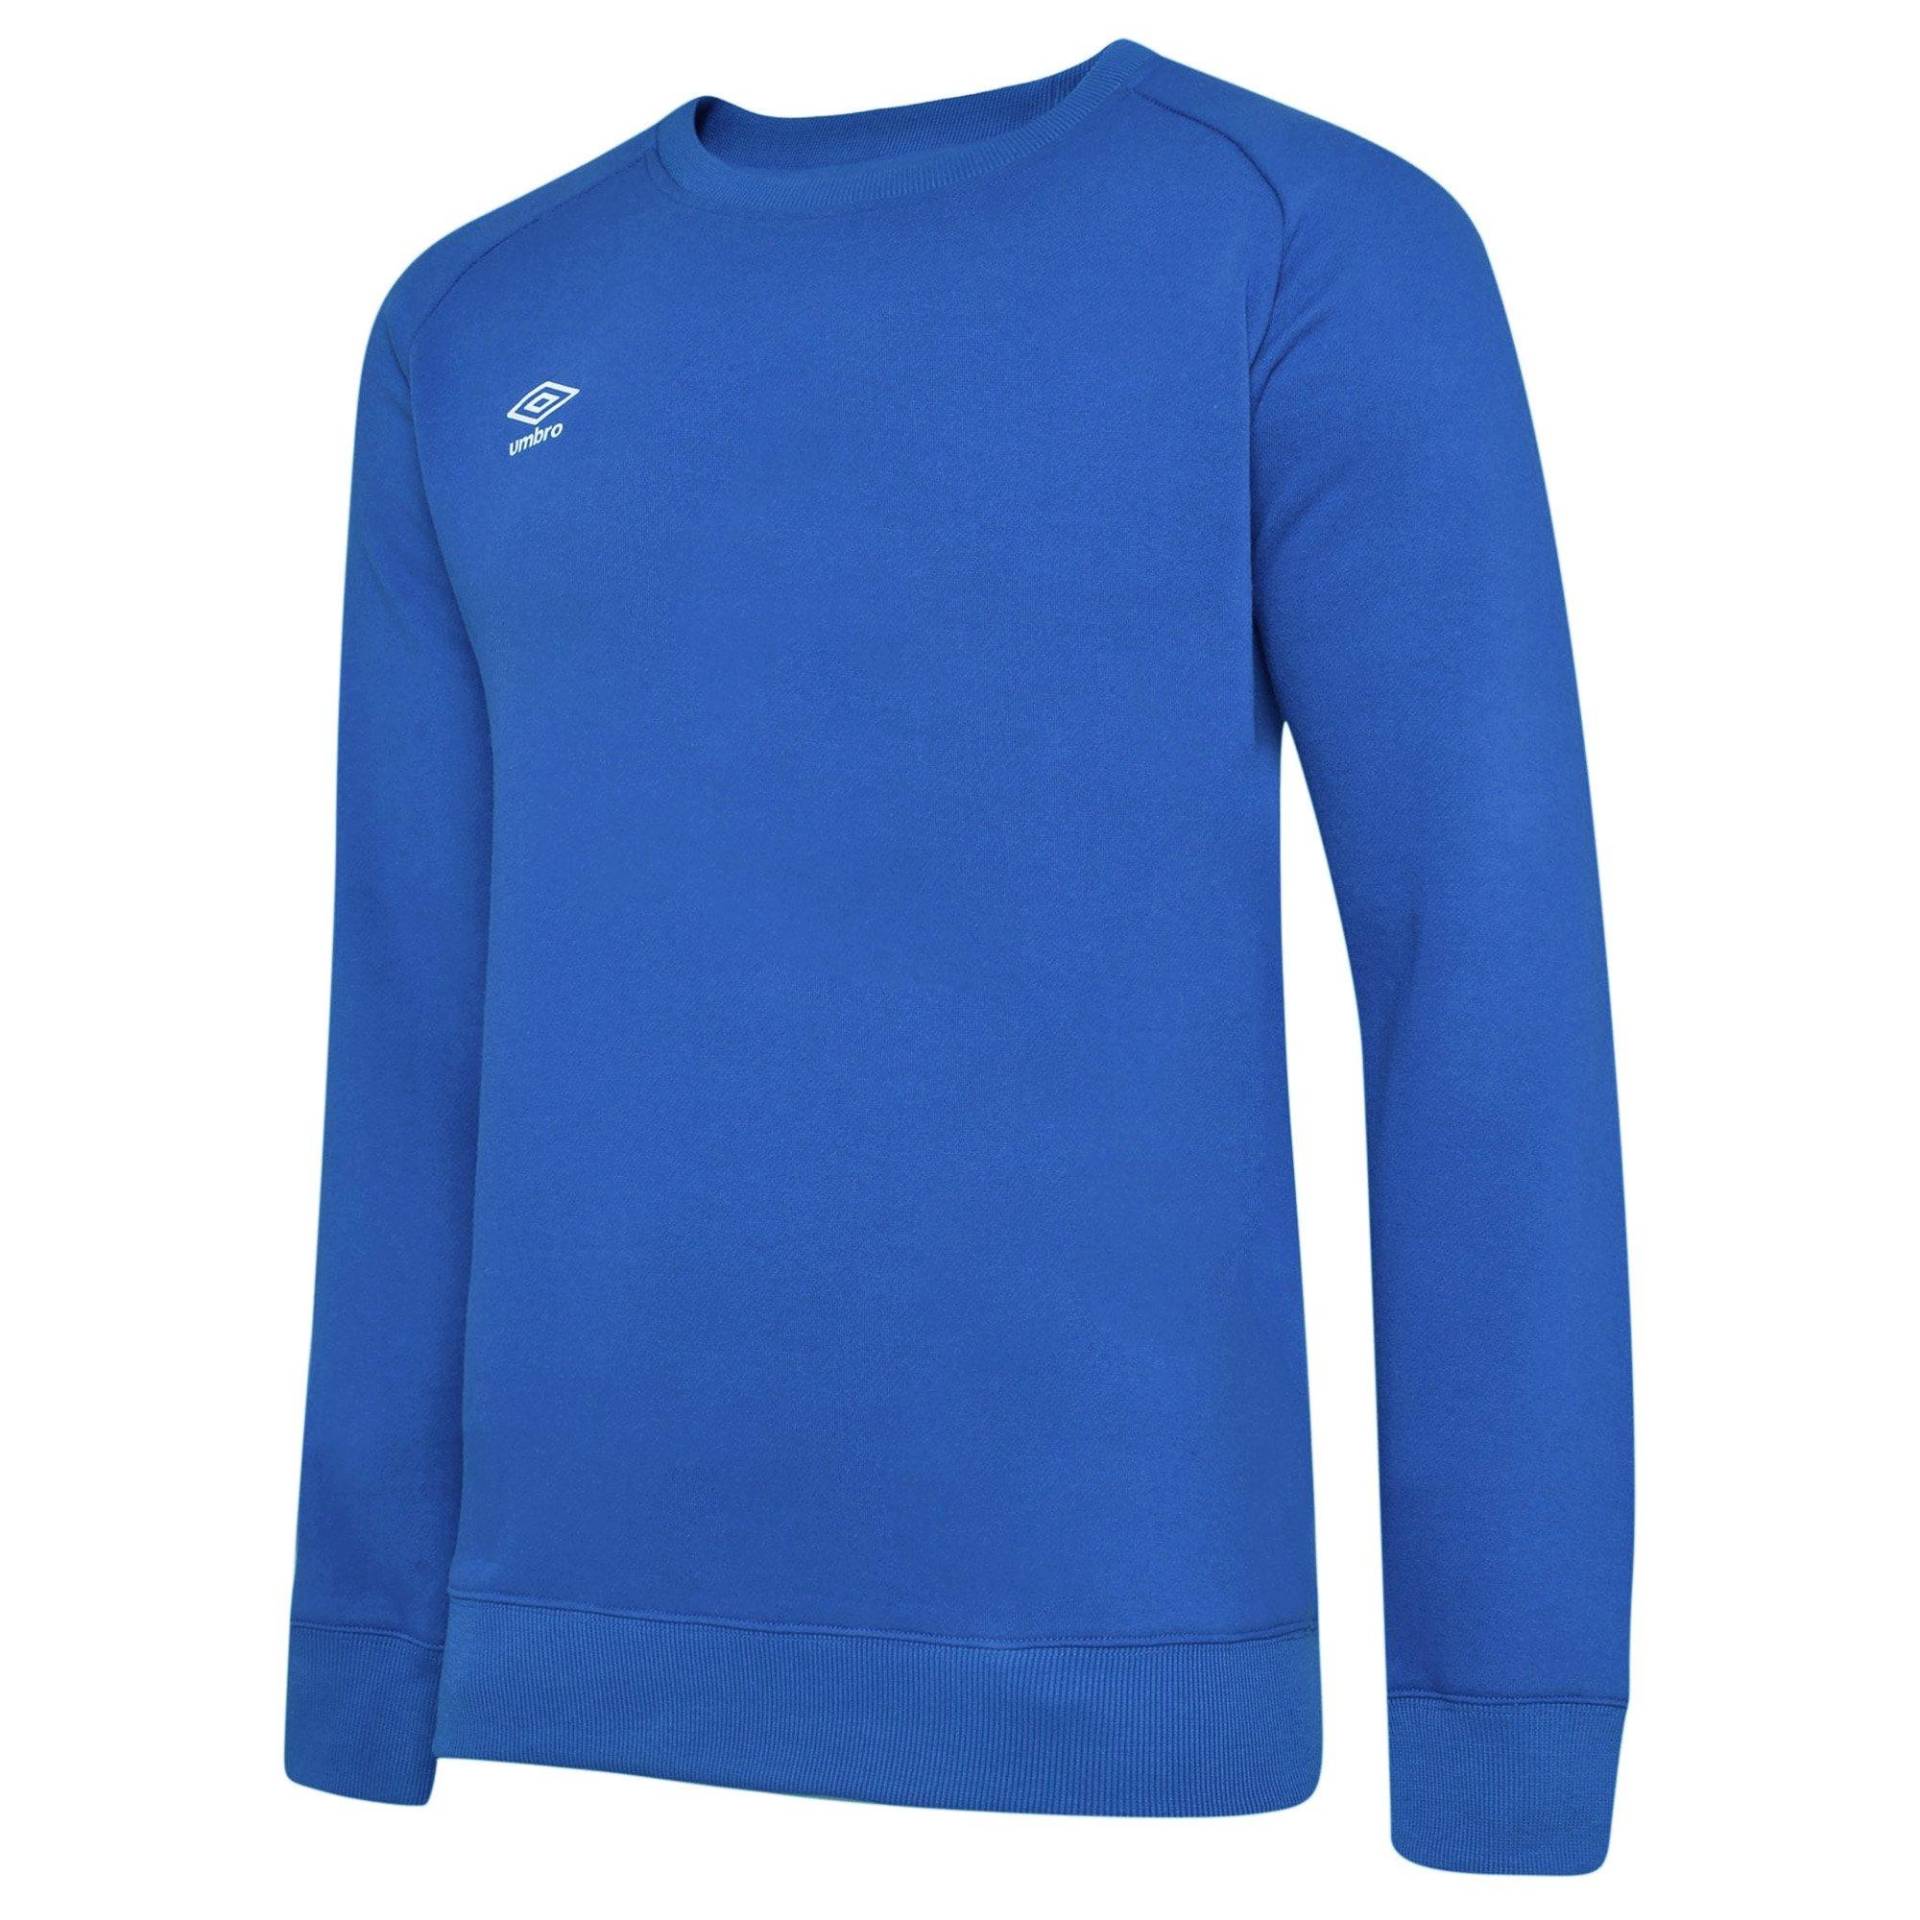 Club Leisure Sweatshirt Damen Blau XXL von Umbro